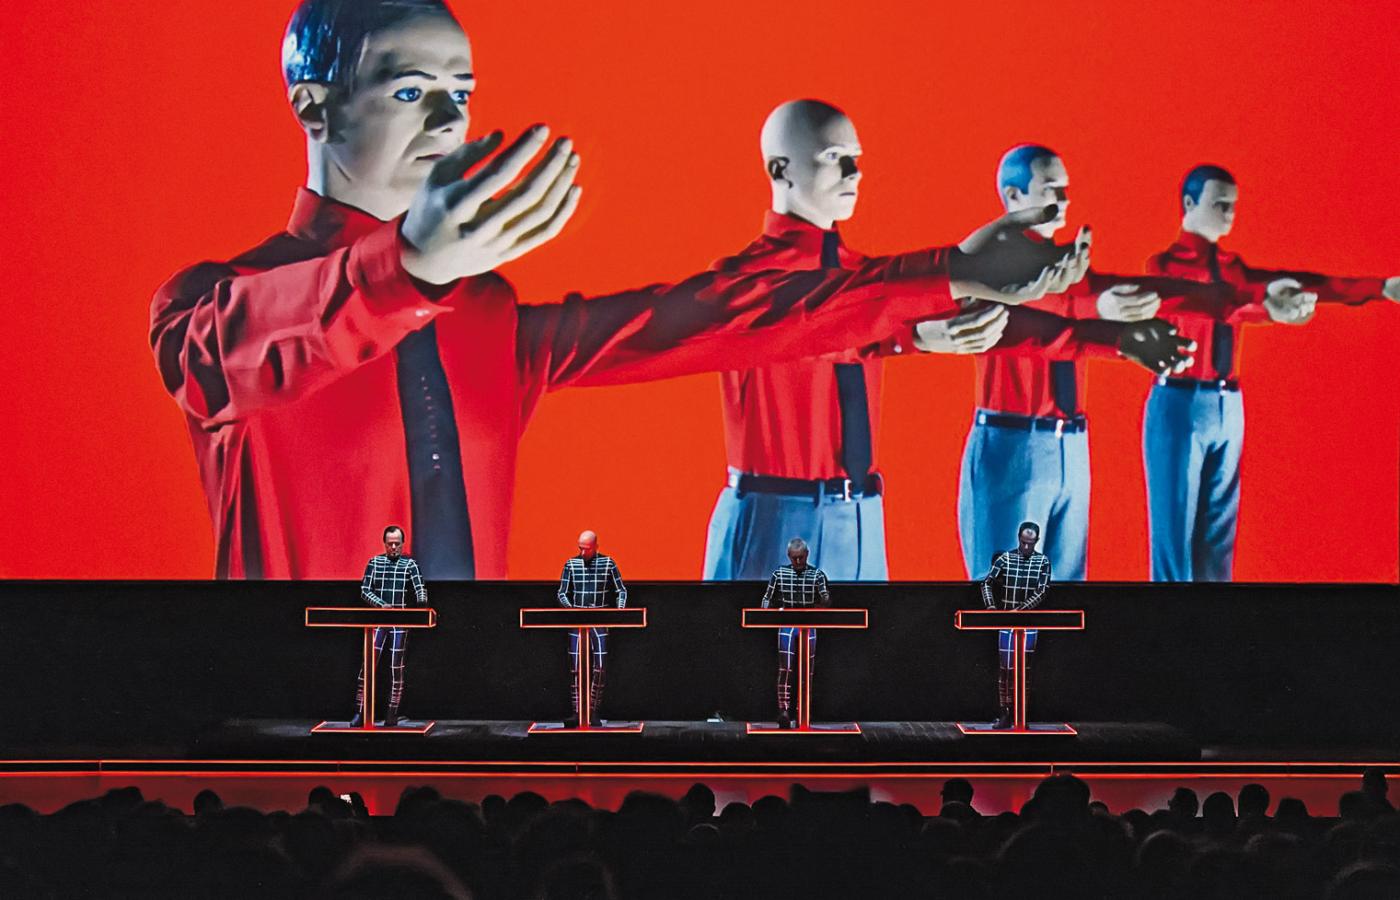 Ostatnie sukcesy na radiowych playlistach Kraftwerk odnosił jakieś 30 lat temu, lecz właśnie teraz wydaje się przeżywać kulminację kariery.